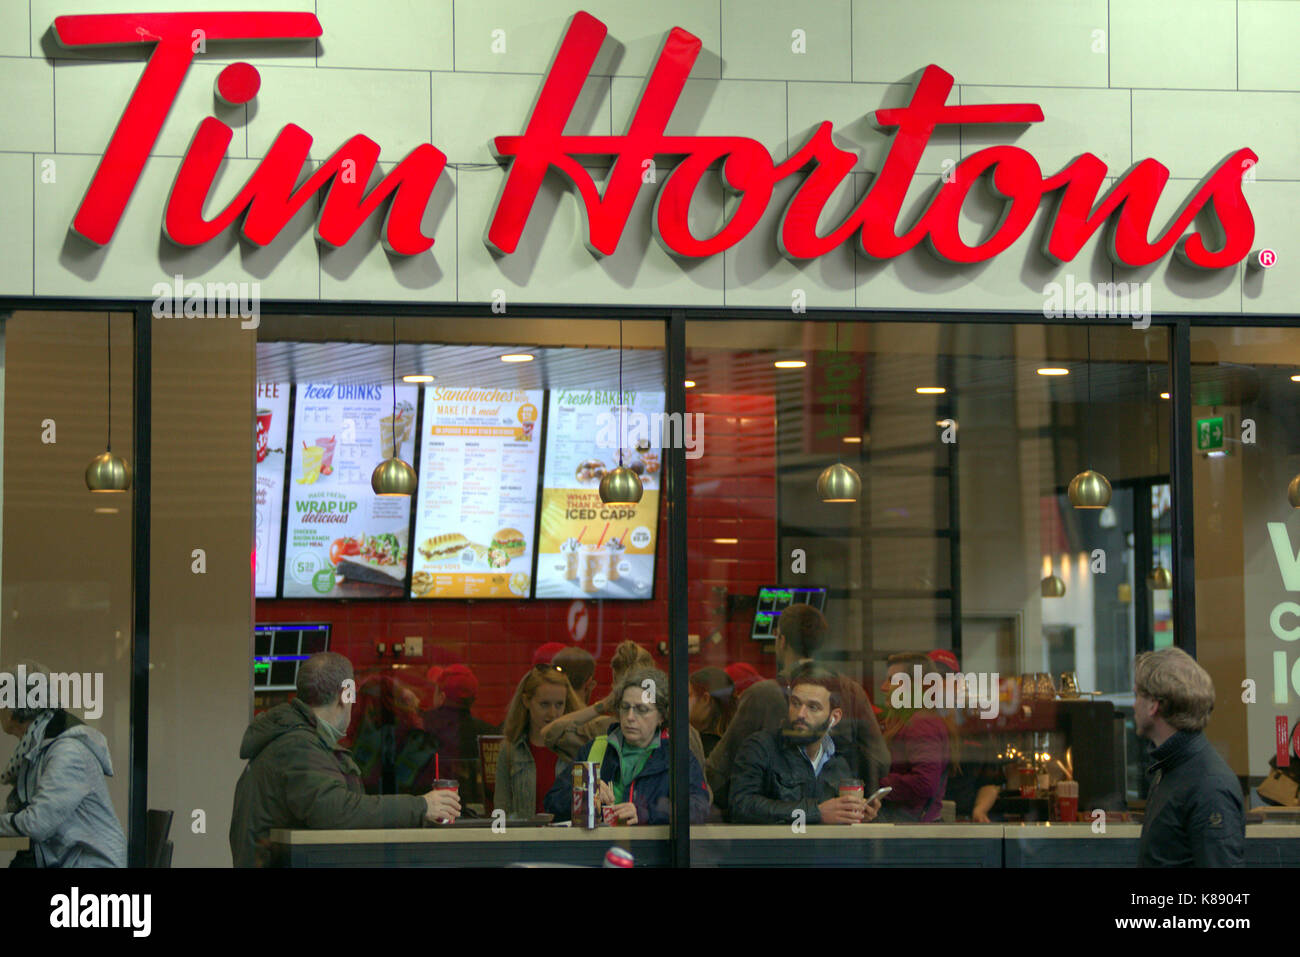 Tim Hortons Donut kanadischen multinationalen Fast Food Restaurant für seine Kaffee und Donuts shop Coffee Bar der erste in Großbritannien om Glasgow bekannt Stockfoto